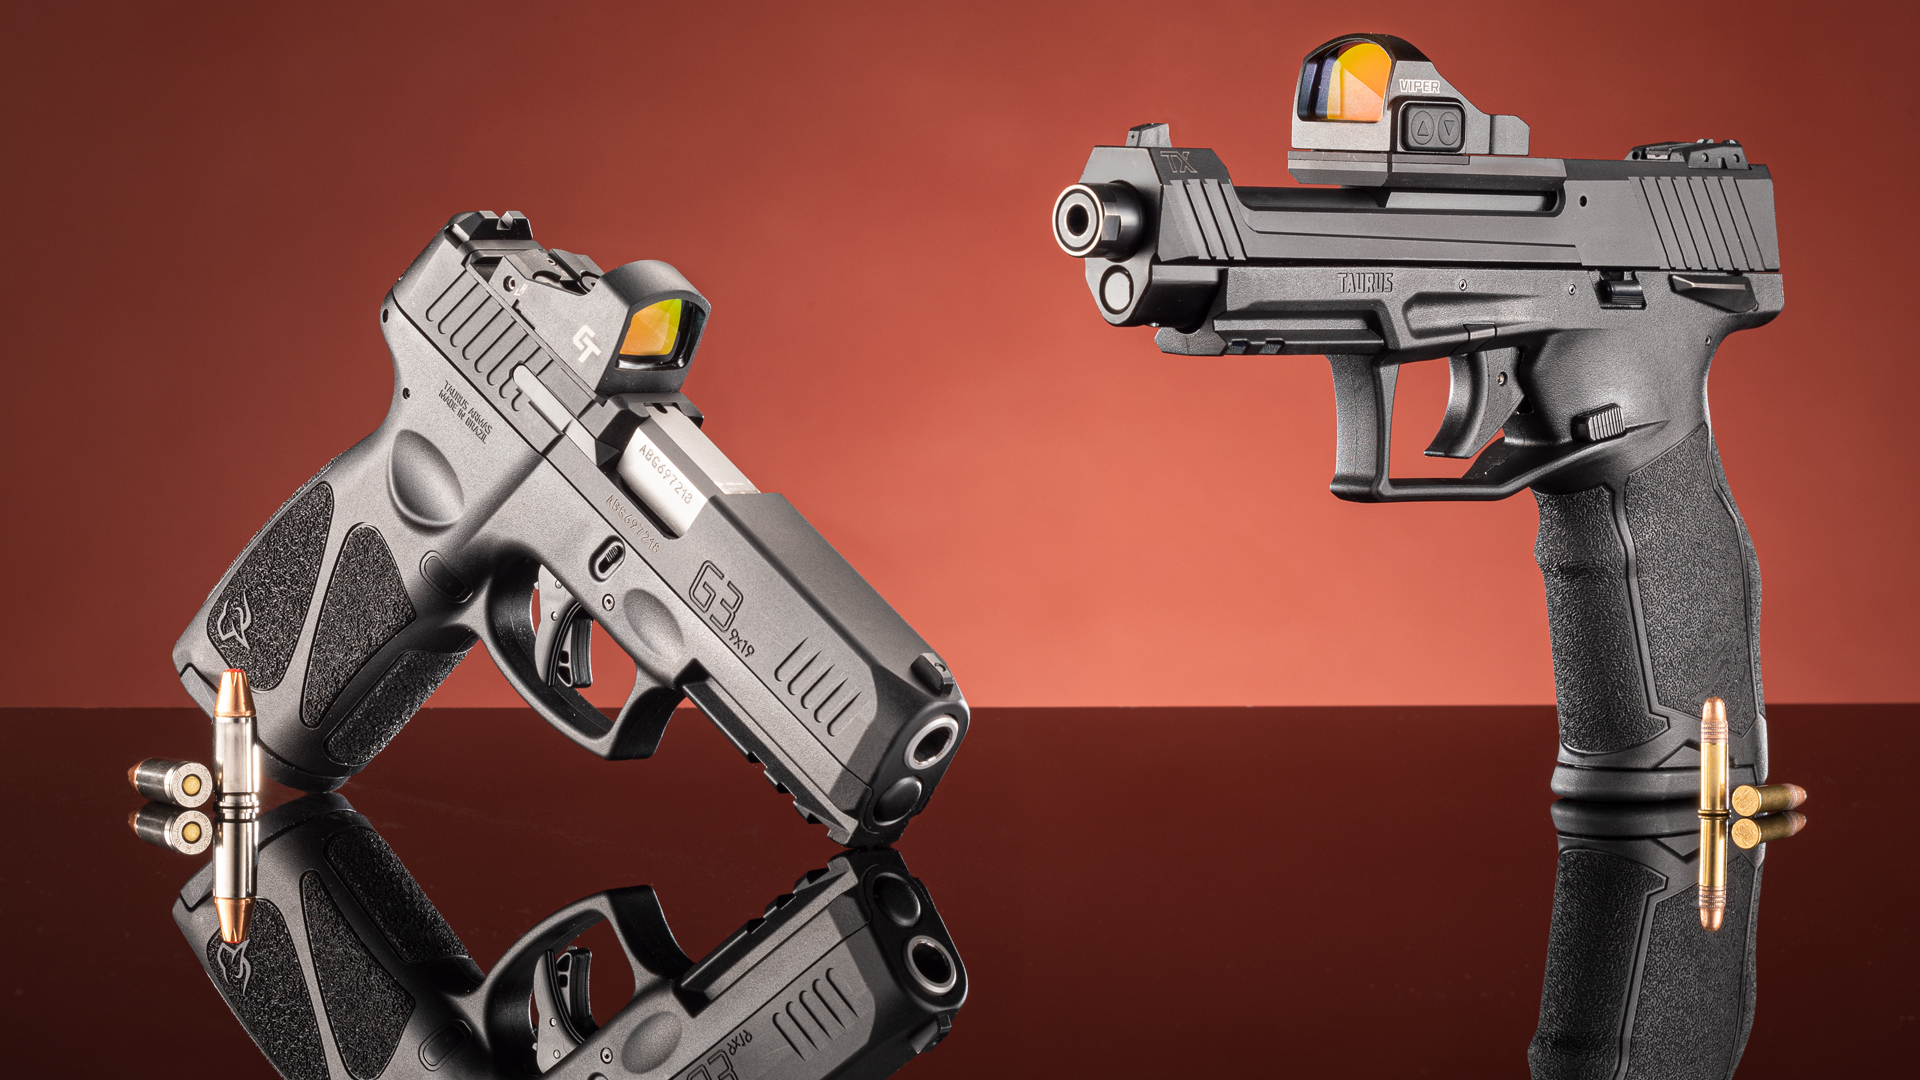 taurus-g3c-pistol-9mm-3-20-barrel-12-round-stainless-steel-slide-black